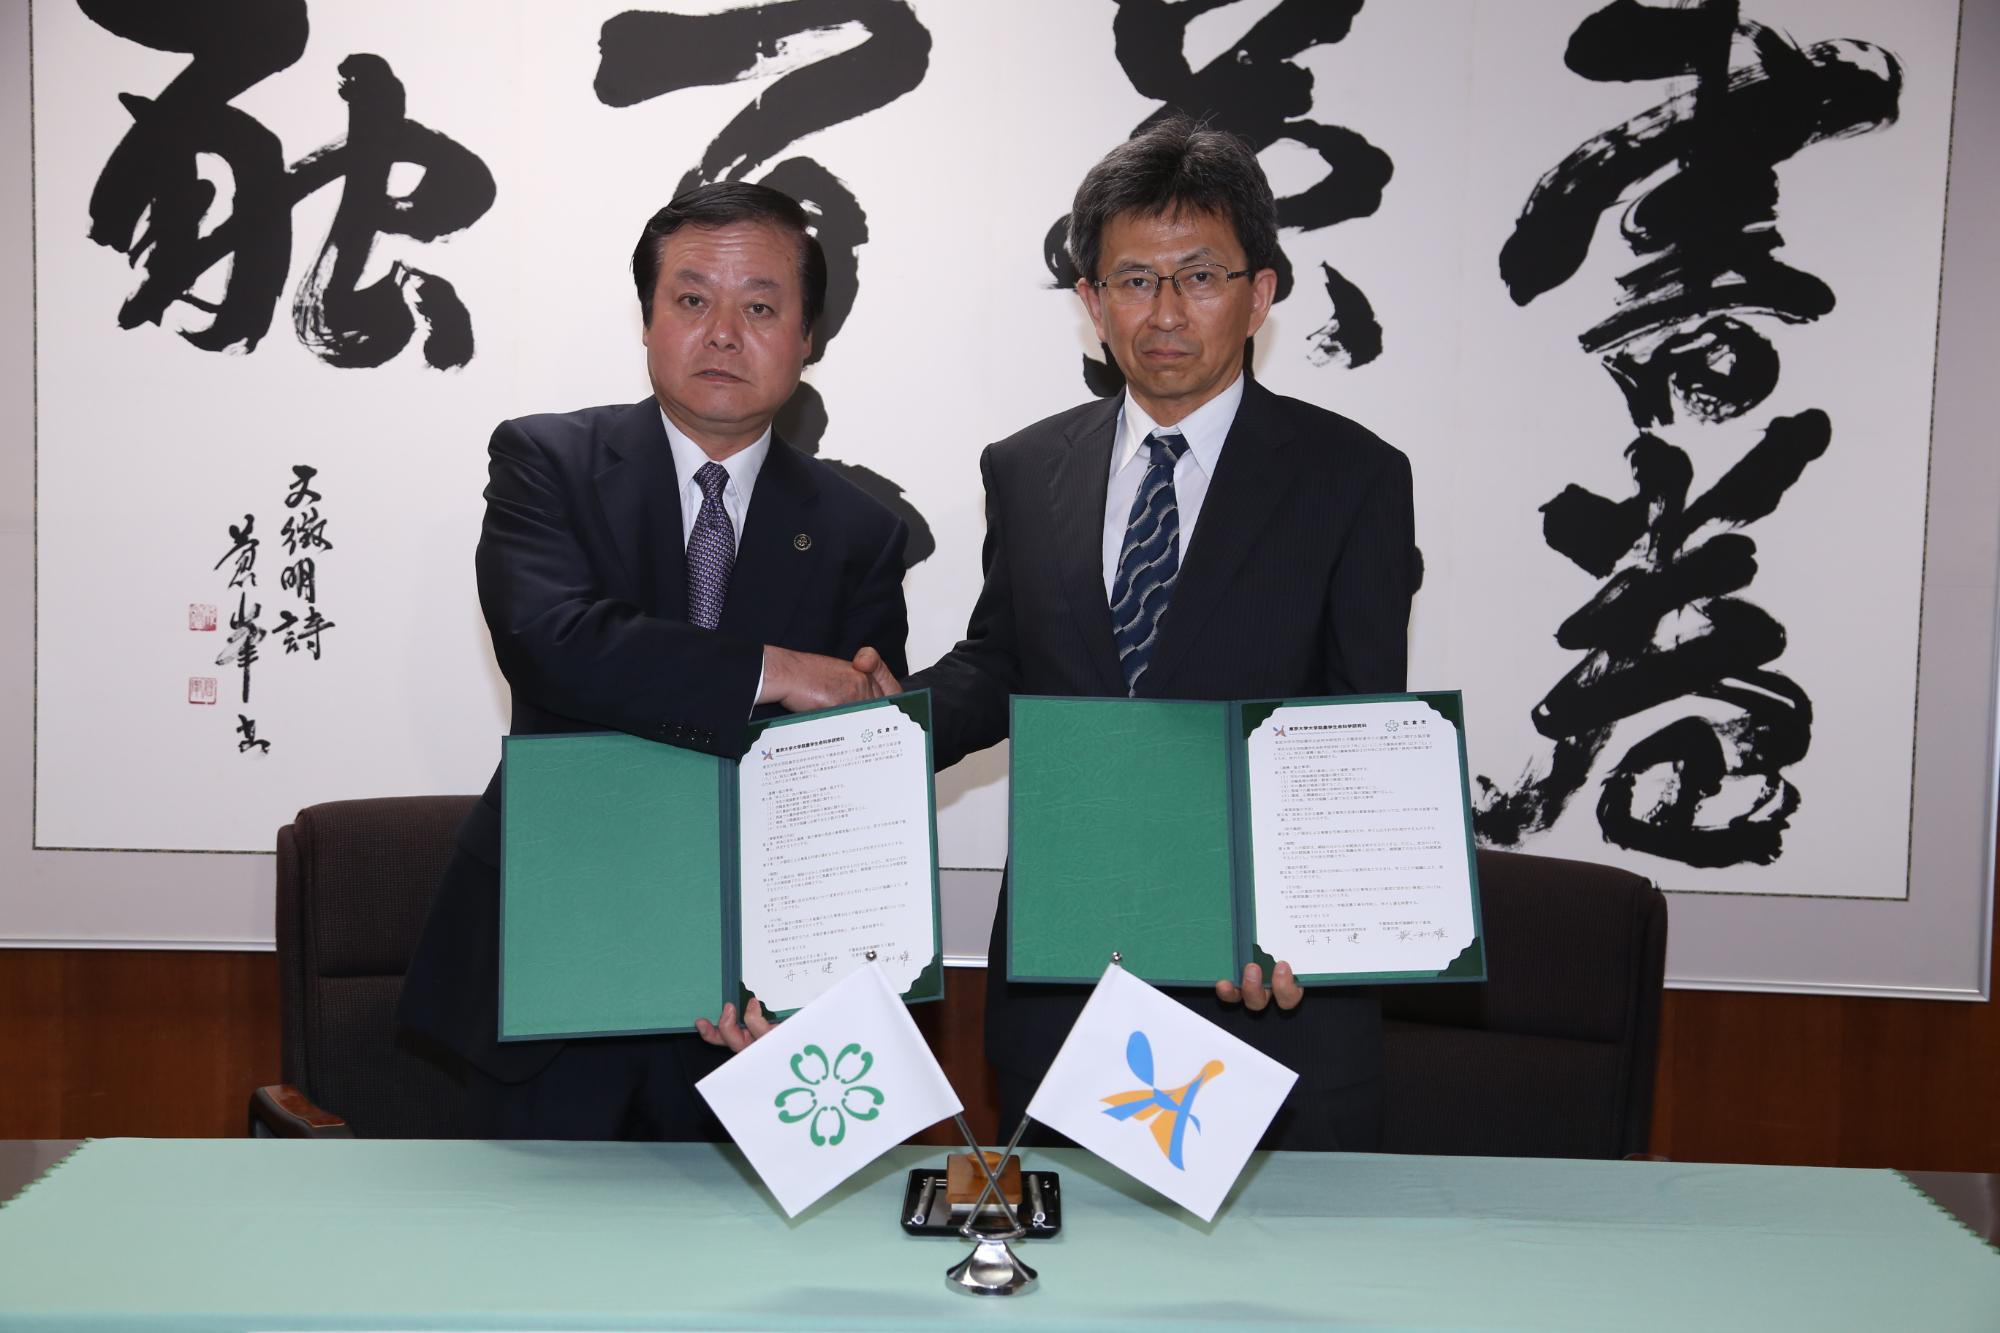 蕨市長と東京大学大学院農学生命科学研究科長 丹下さんがお互いに協定書を持って握手をしている写真